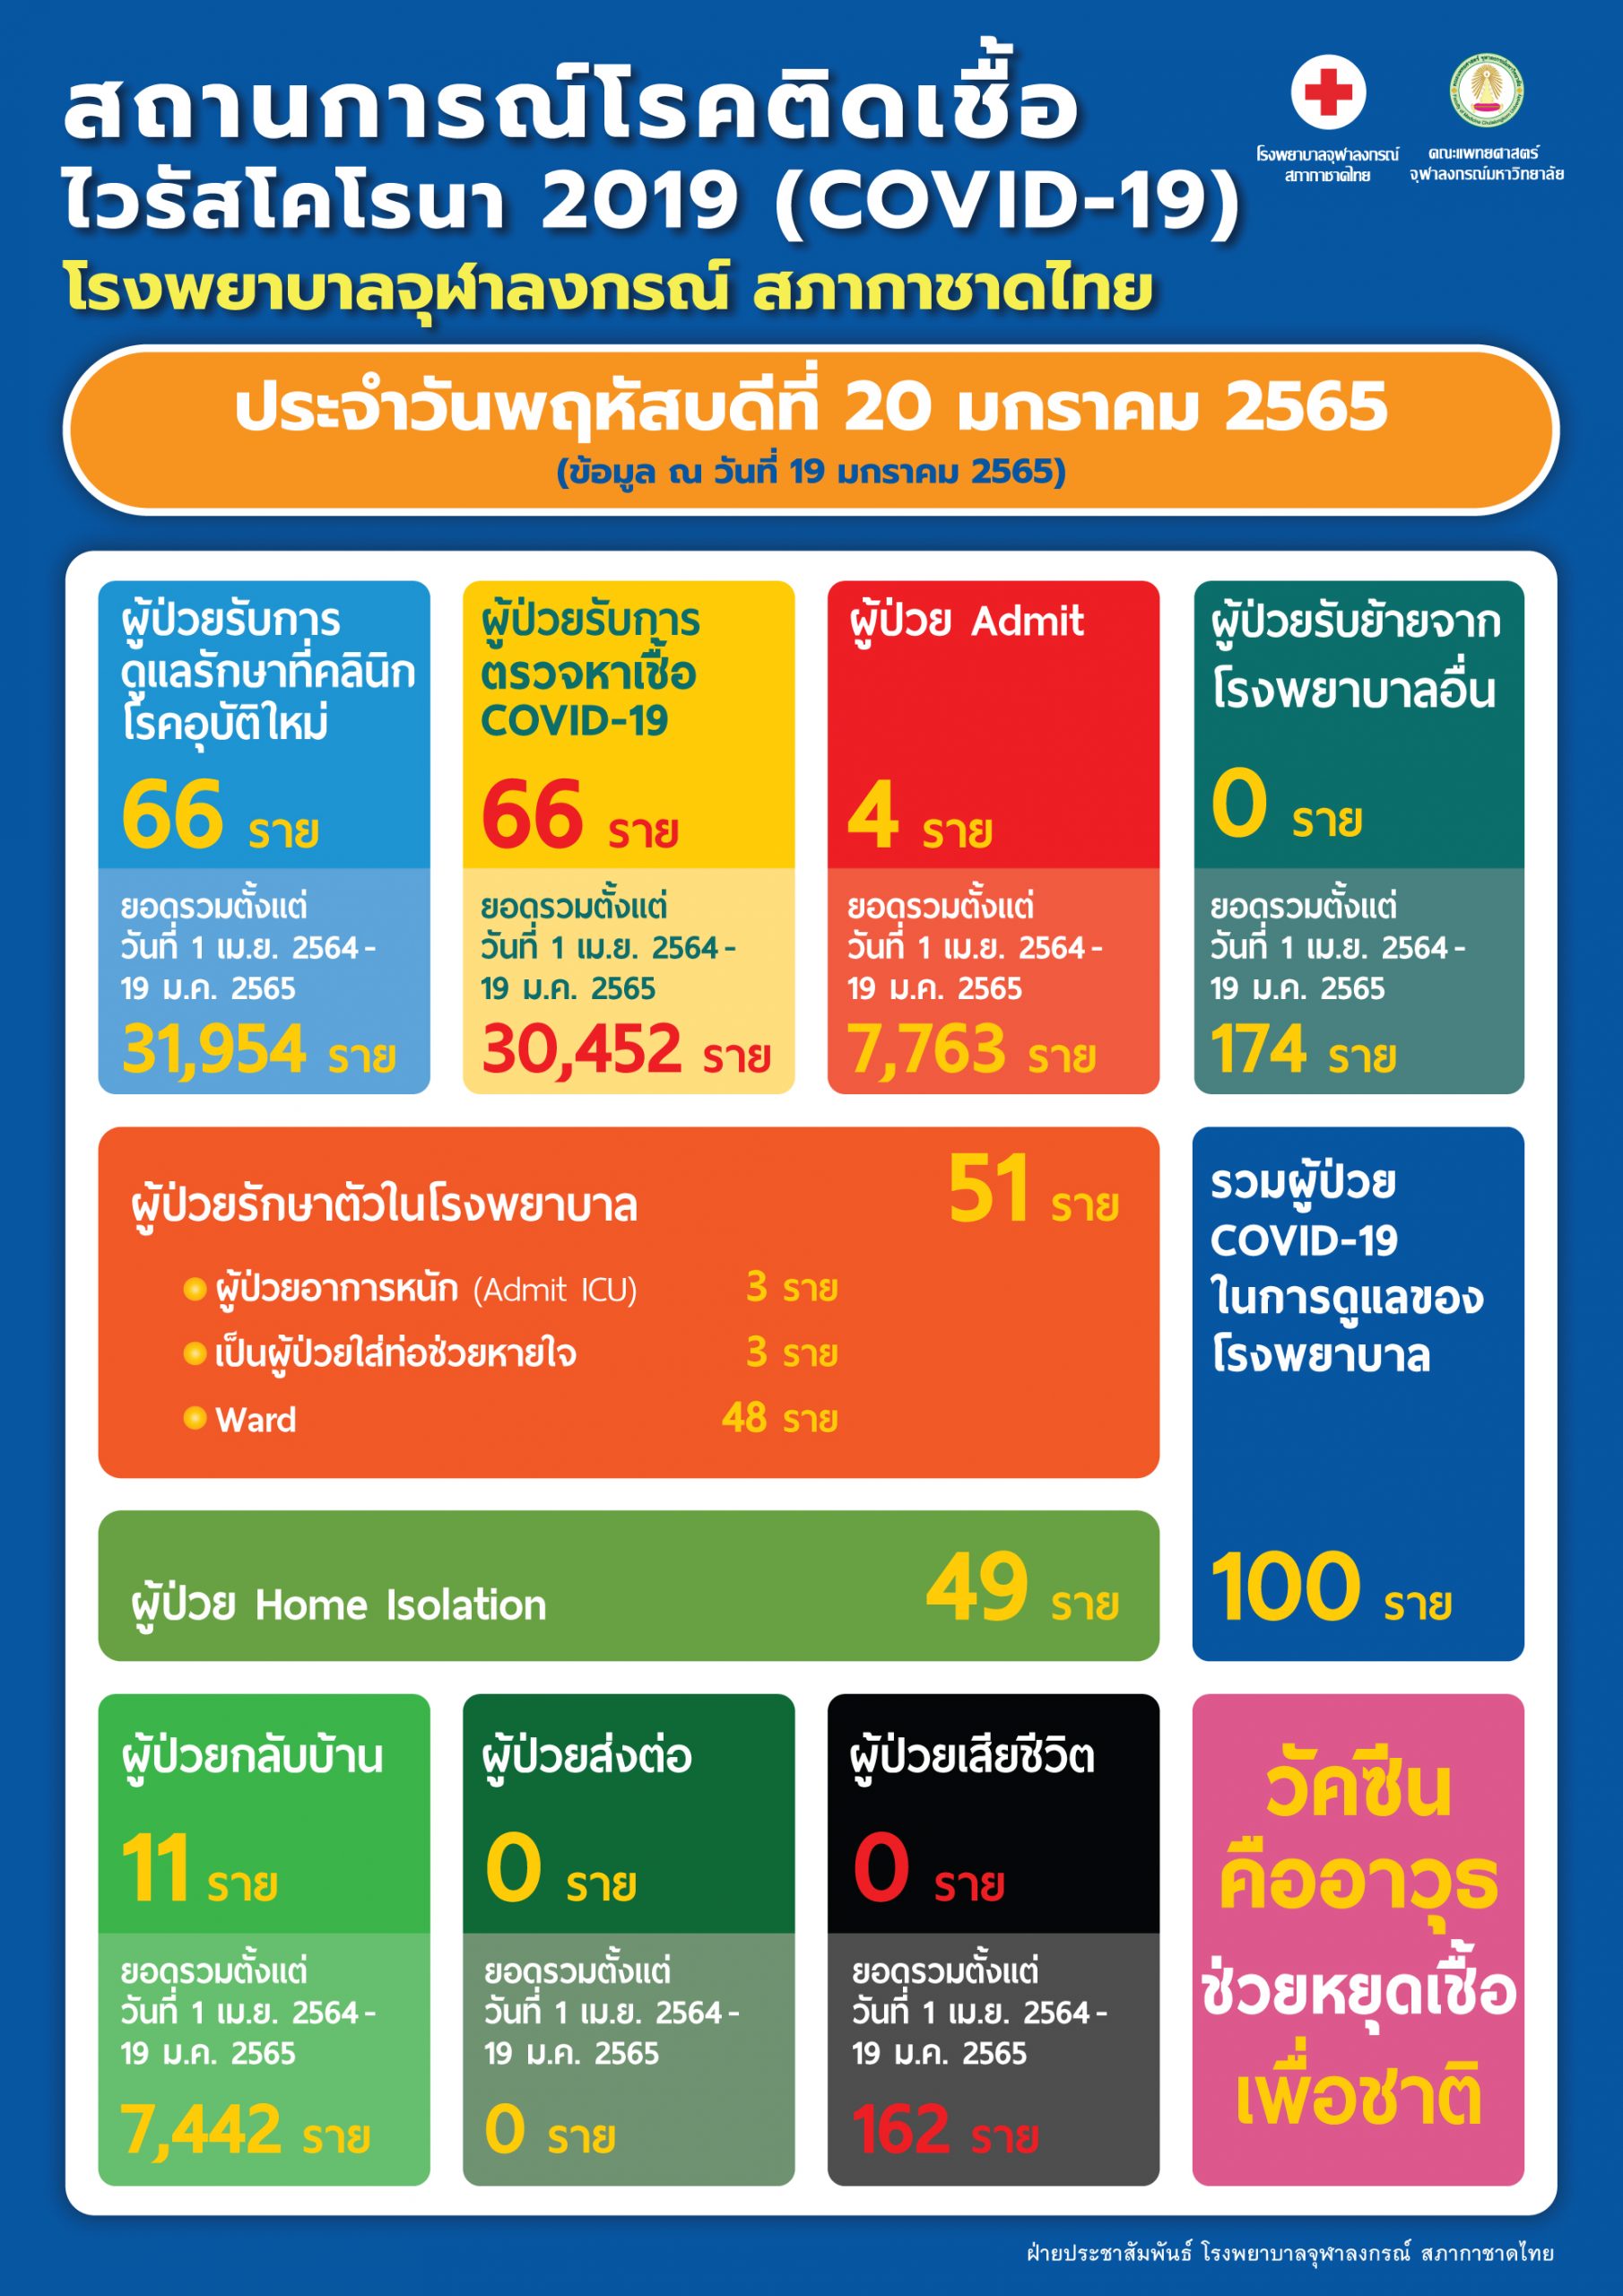 สถานการณ์โรคติดเชื้อไวรัสโคโรนา 2019 (COVID-19) โรงพยาบาลจุฬาลงกรณ์ สภากาชาดไทย ประจำวันพฤหัสบดีที่ 20 มกราคม 2565